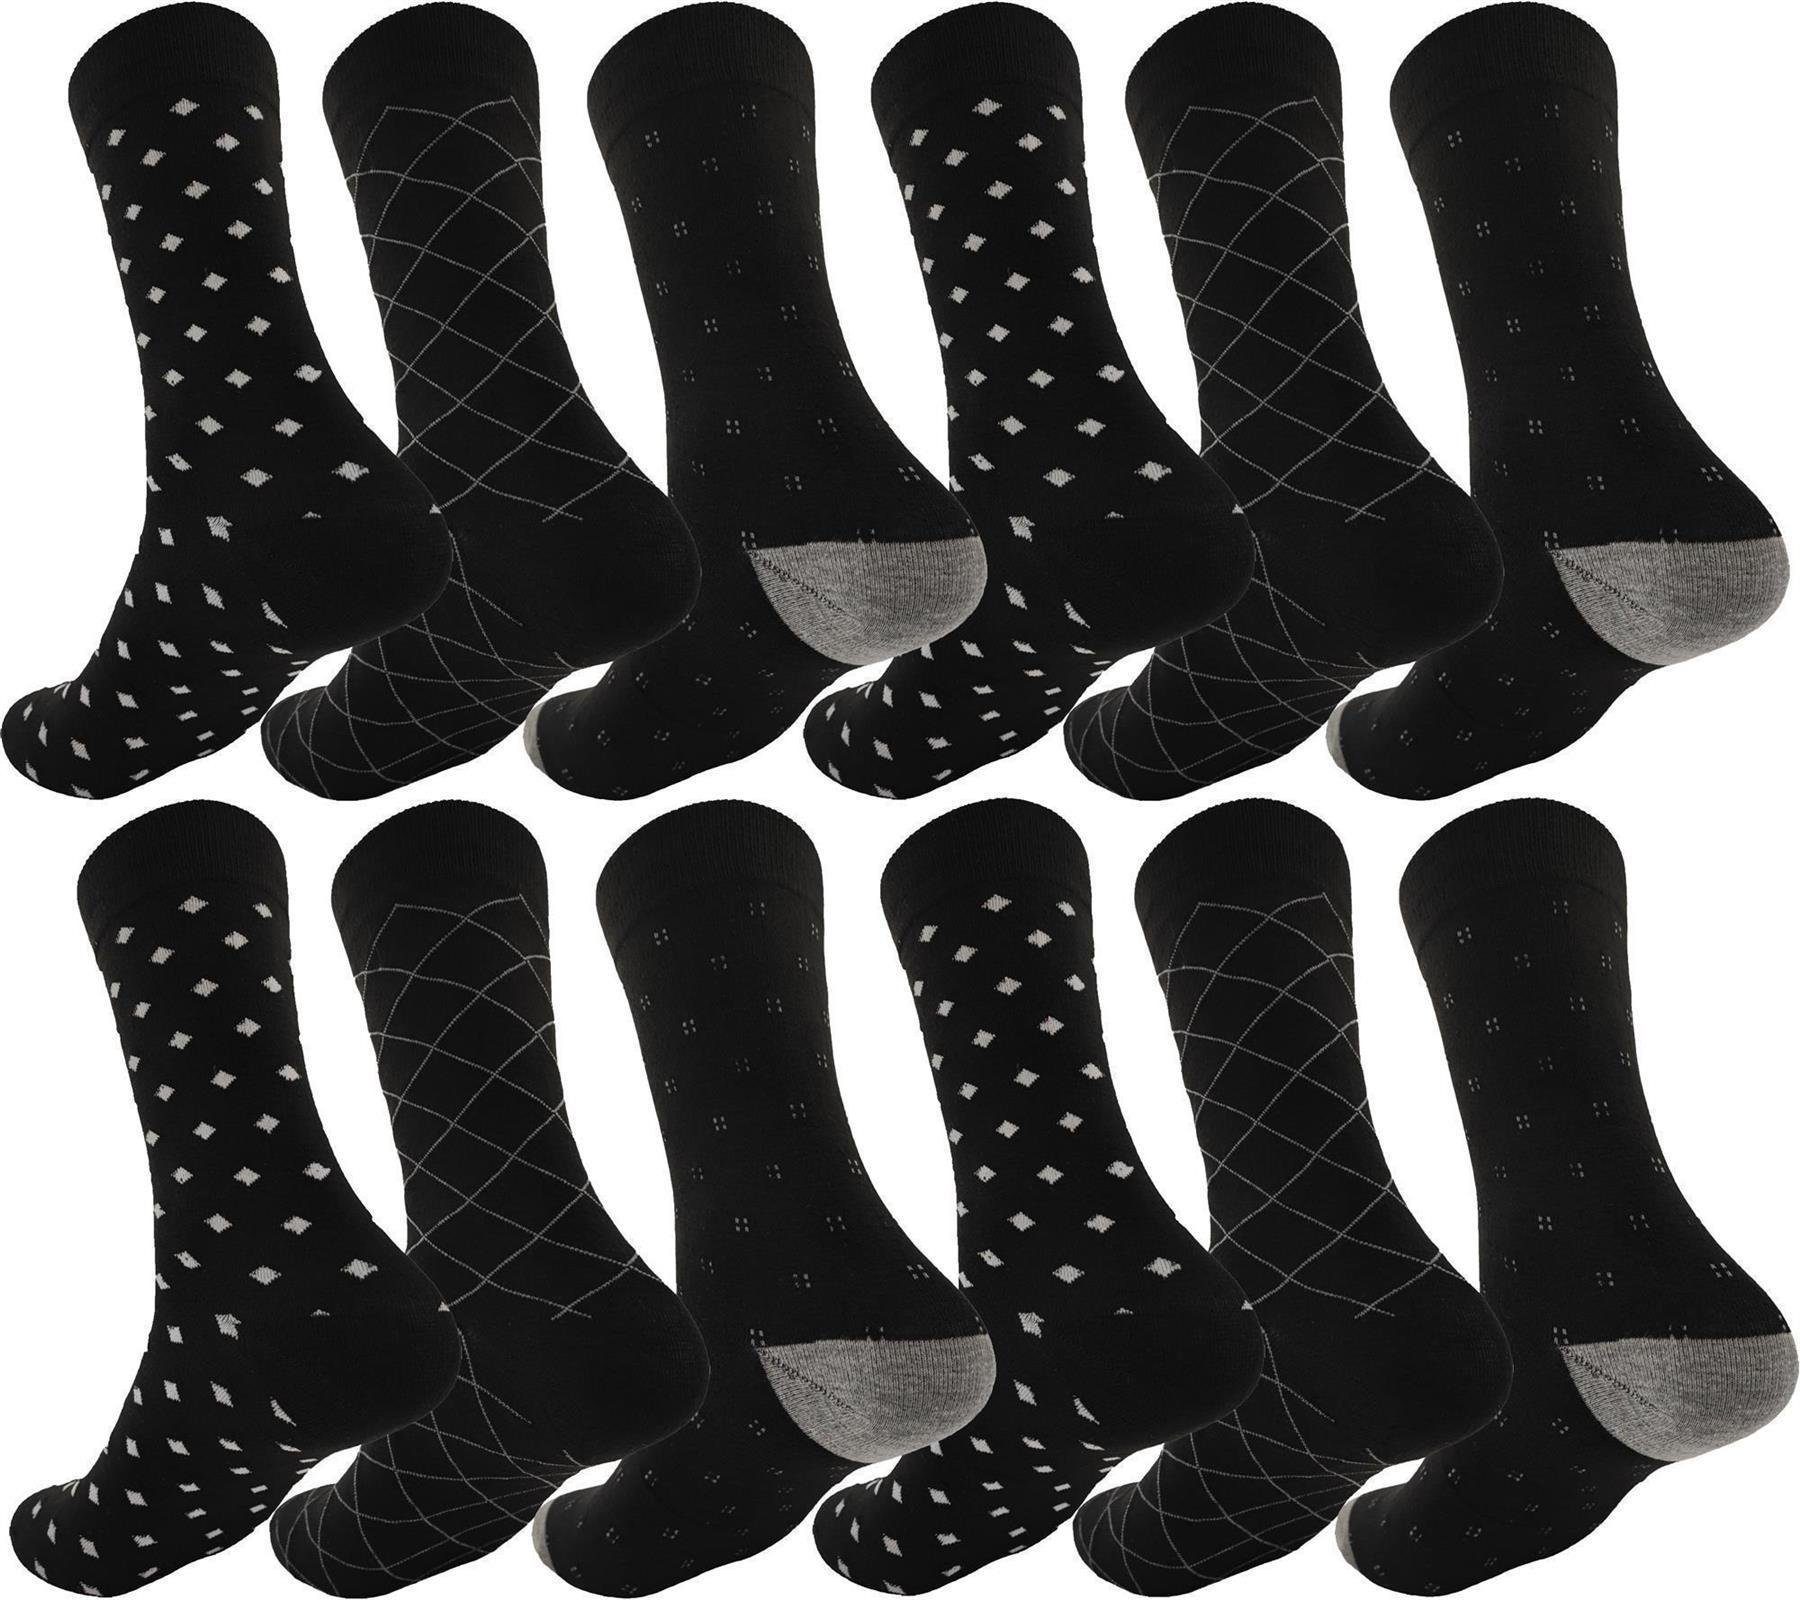 EloModa Basicsocken 12 Paar Herren Socken Muster klassischer Form Freizeit Sport (12-Paar) Mix6